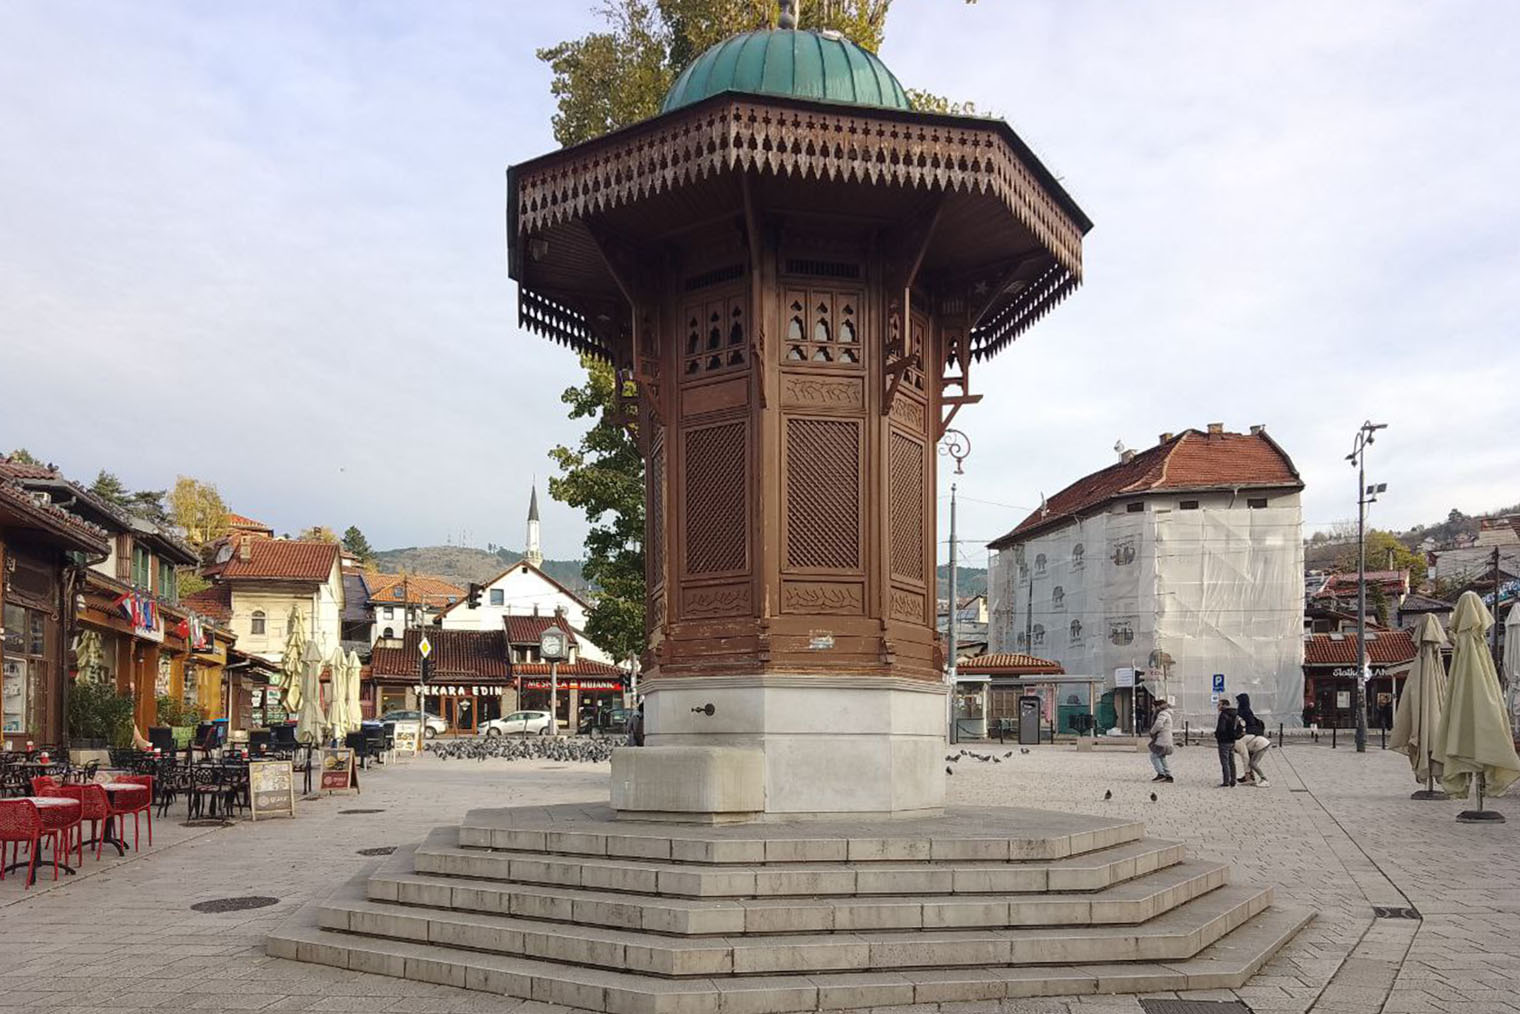 Себиль — деревянный фонтан в османском стиле — главная достопримечательность Сараева. Босния долгое время входила в состав Османской империи, там сильно чувствуется турецкое влияние